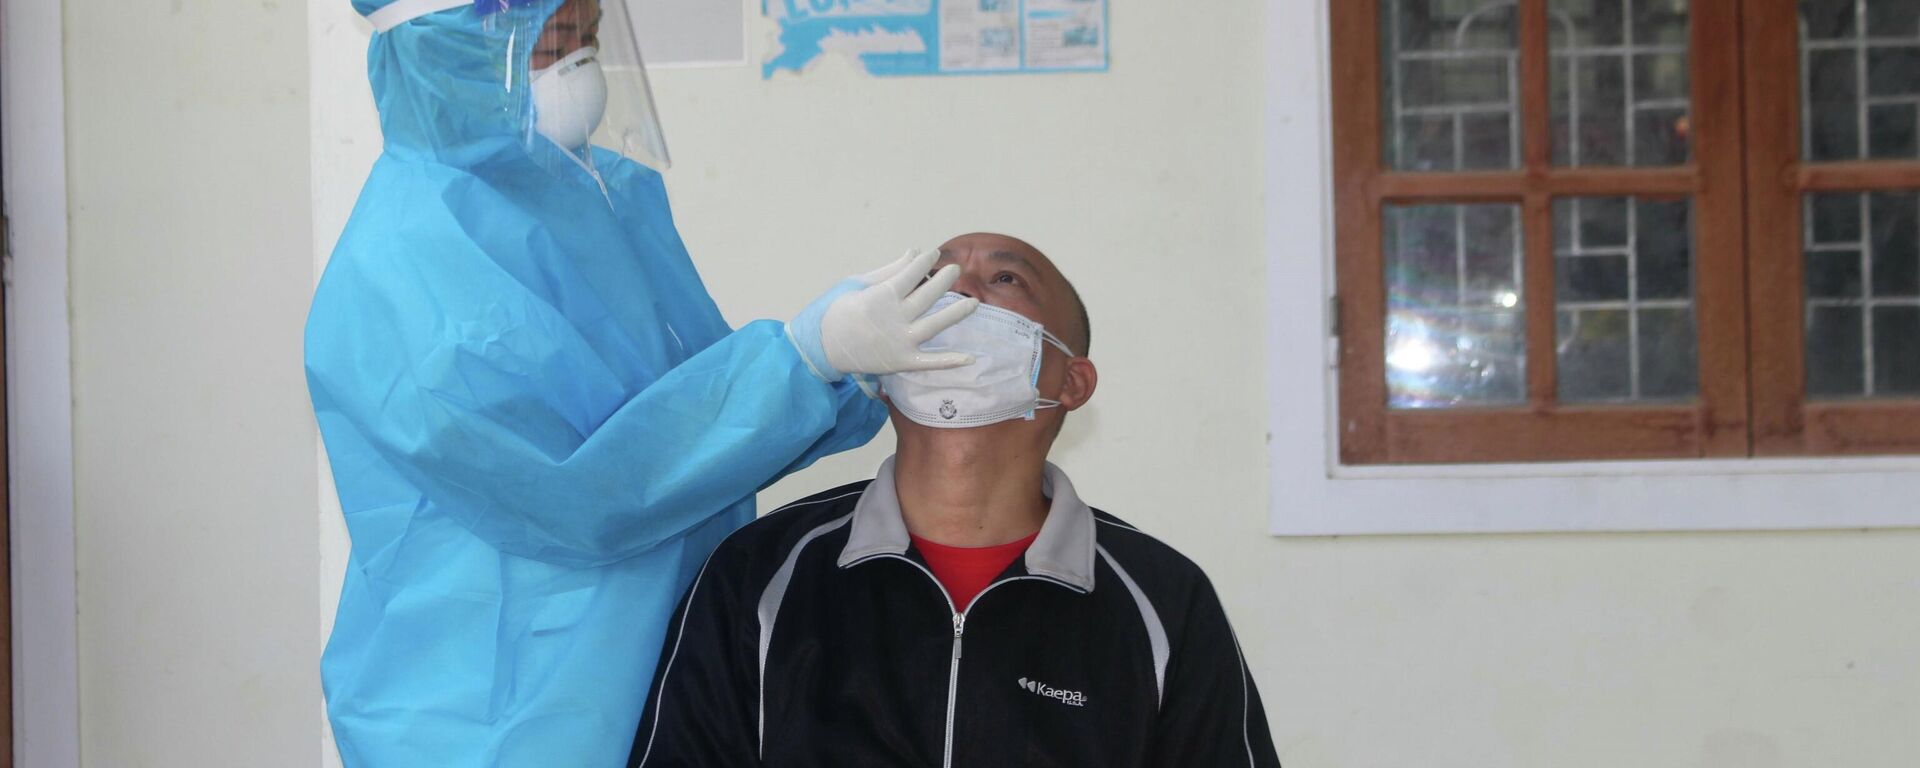  Nhân viên y tế huyện Con Cuông lấy mẫu test nhanh cho người dân địa phương - Sputnik Việt Nam, 1920, 21.12.2021